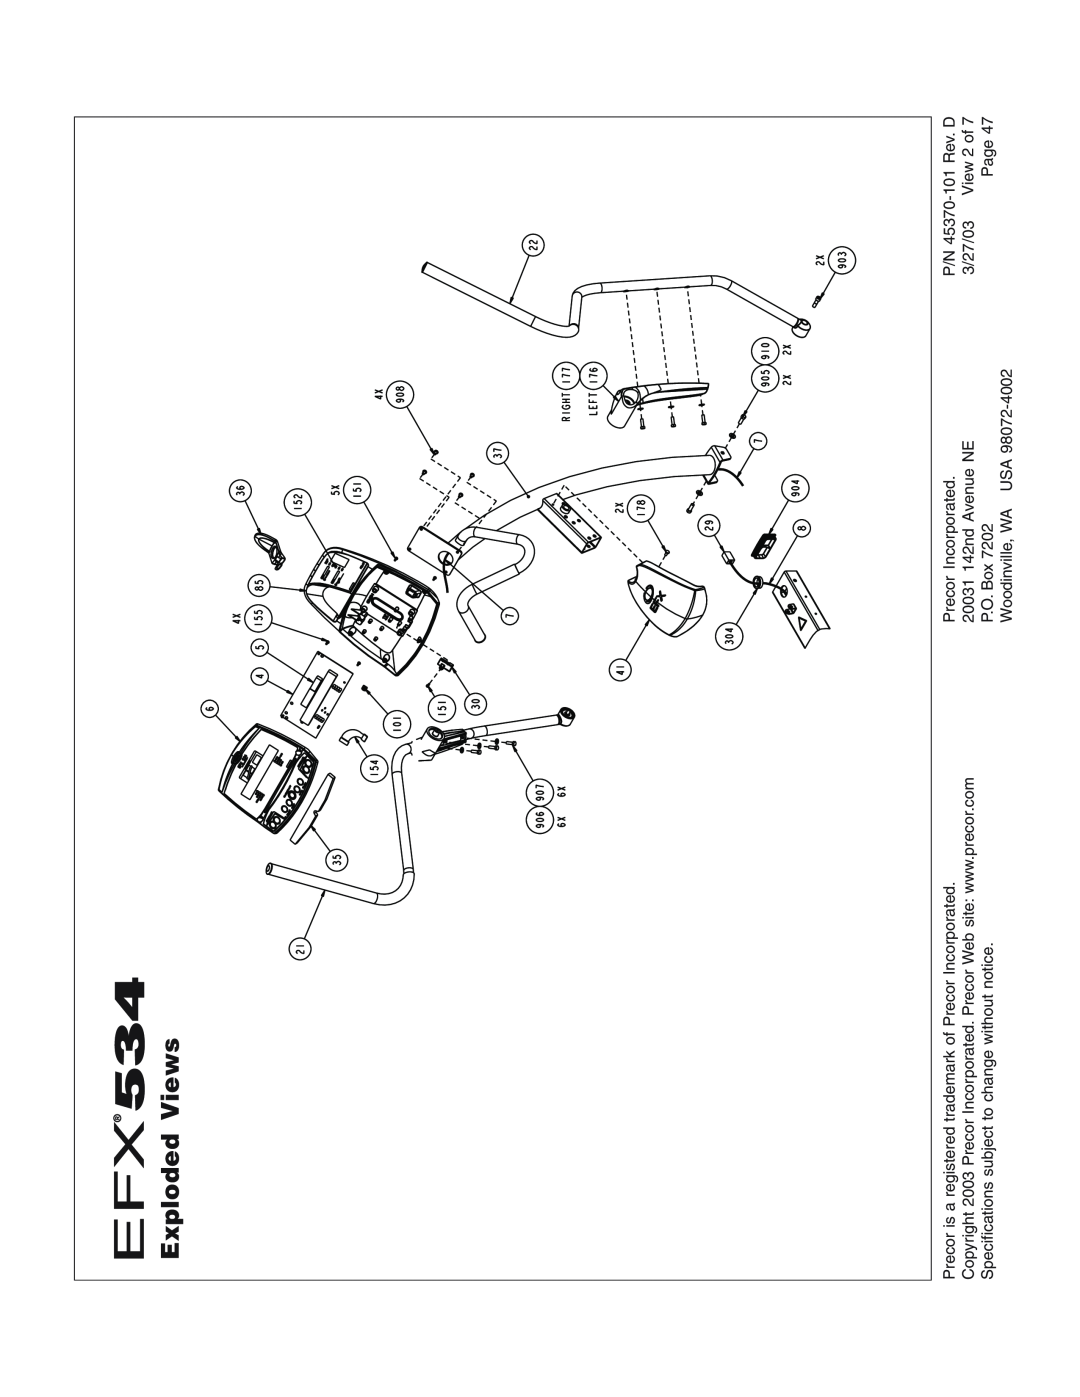 Precor EFX534 Exploded Views, Precor is a registered trademark of Precor Incorporated, 20031 142nd Avenue NE, P.O. Box 